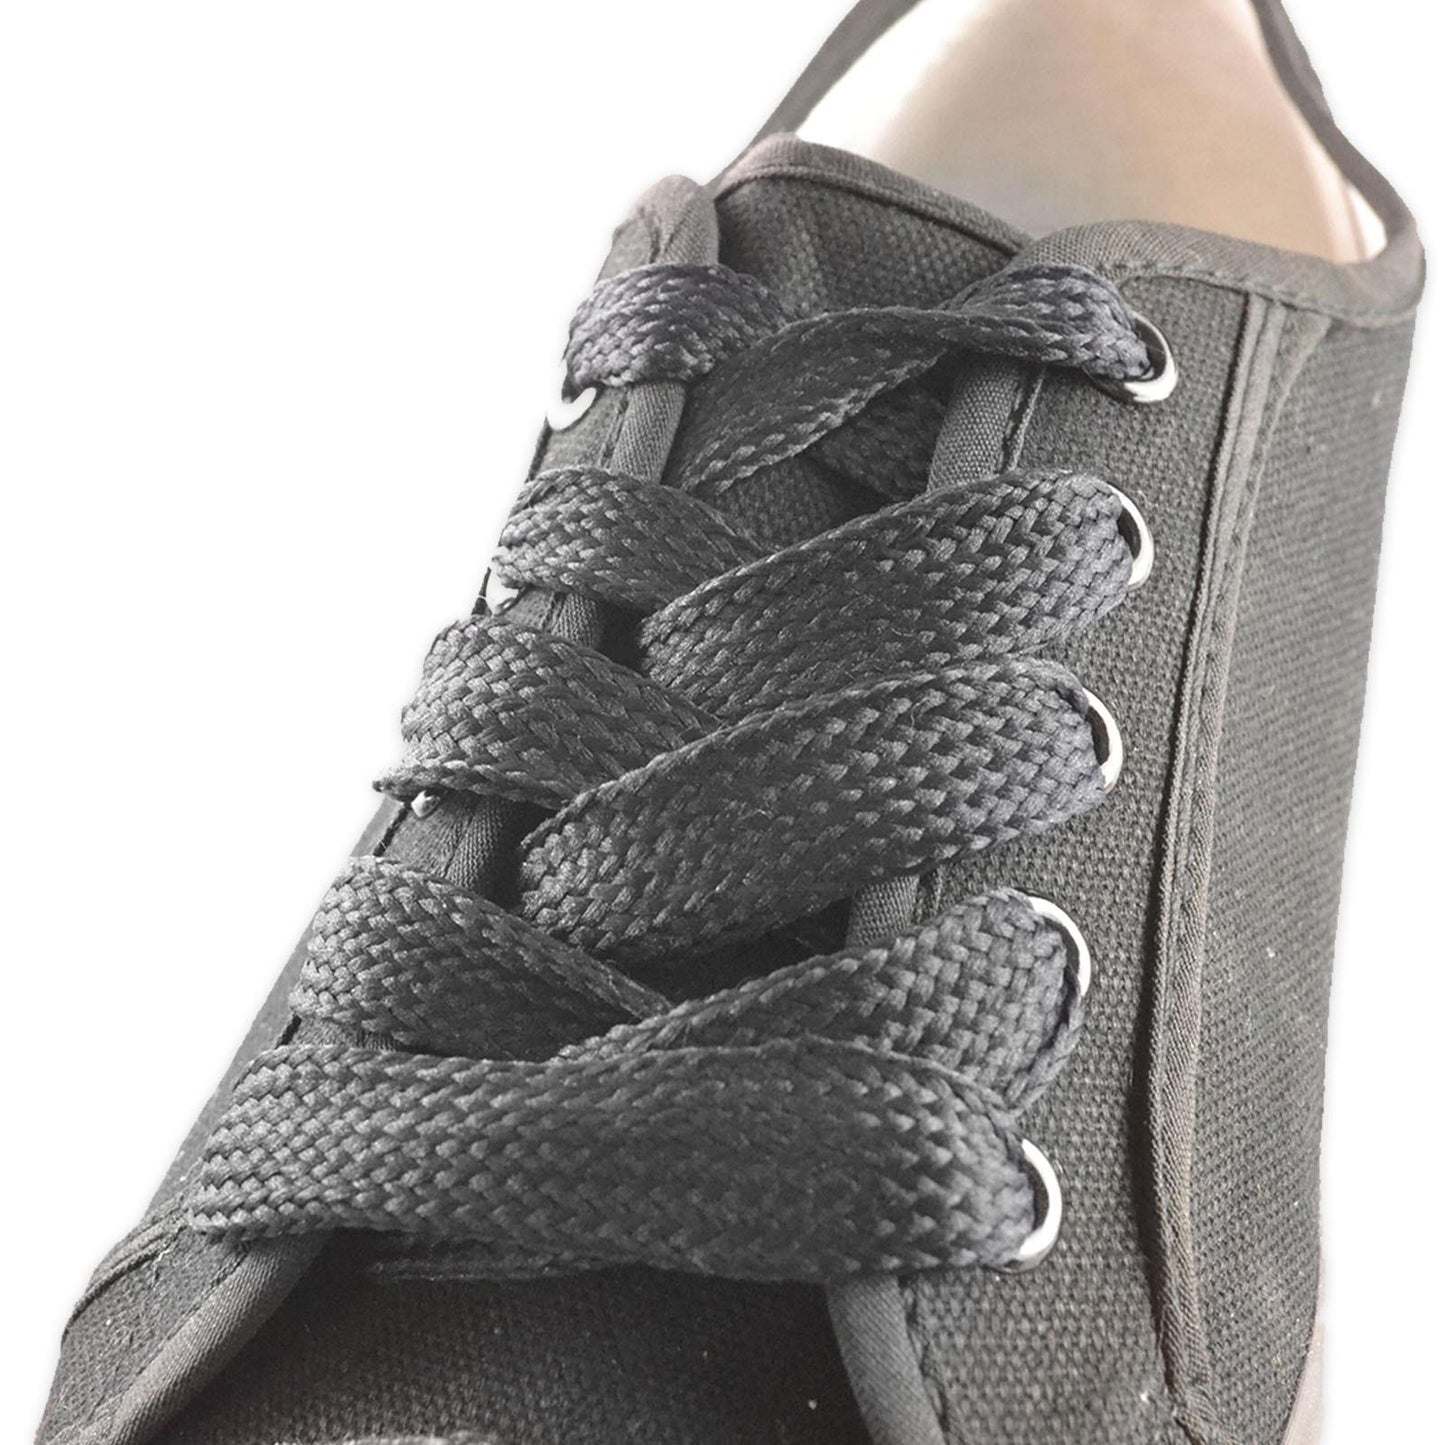 Shoestring Flat Block Badminton Shoe Laces - Black 140cm